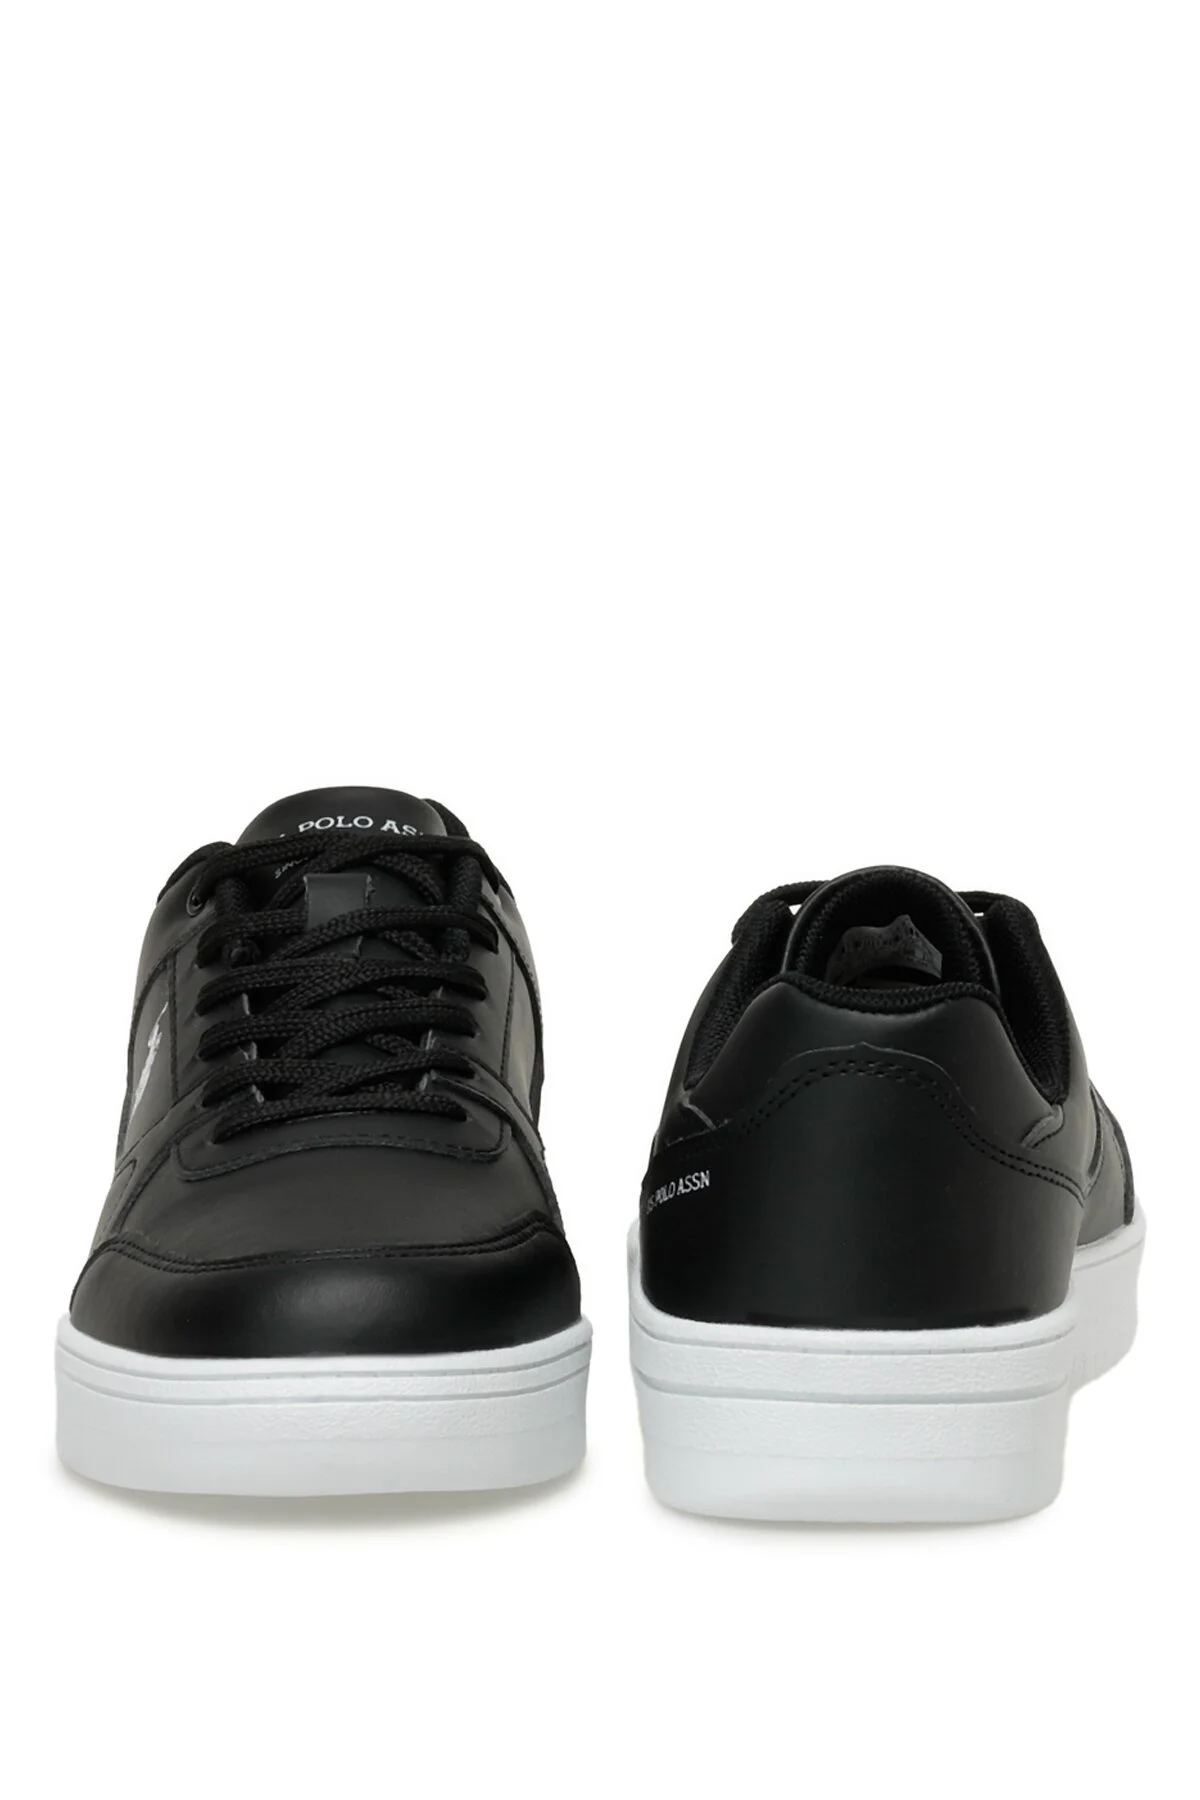 LEE 3FX Erkek Sneaker- Siyah-Beyaz - Thumbnail